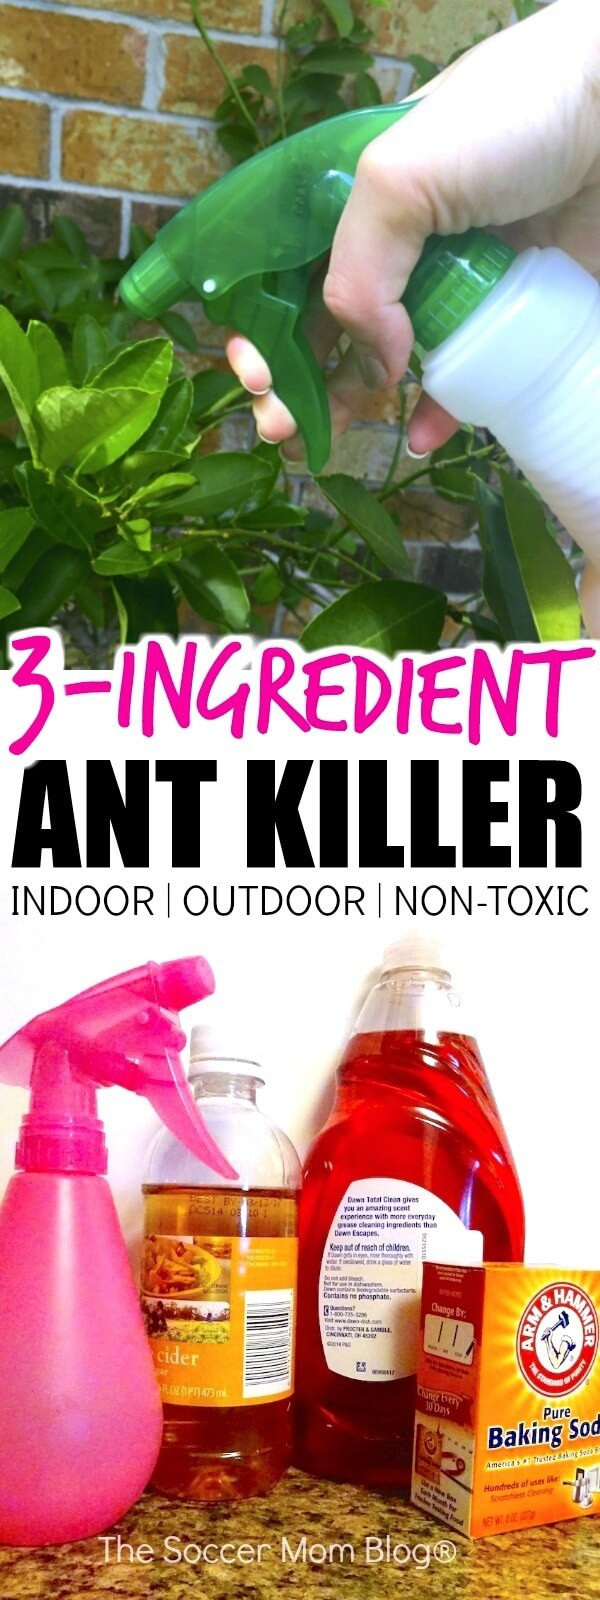 DIY Outdoor Ant Killer
 The Best Homemade Ant Killer Kid & Pet Safe The Soccer